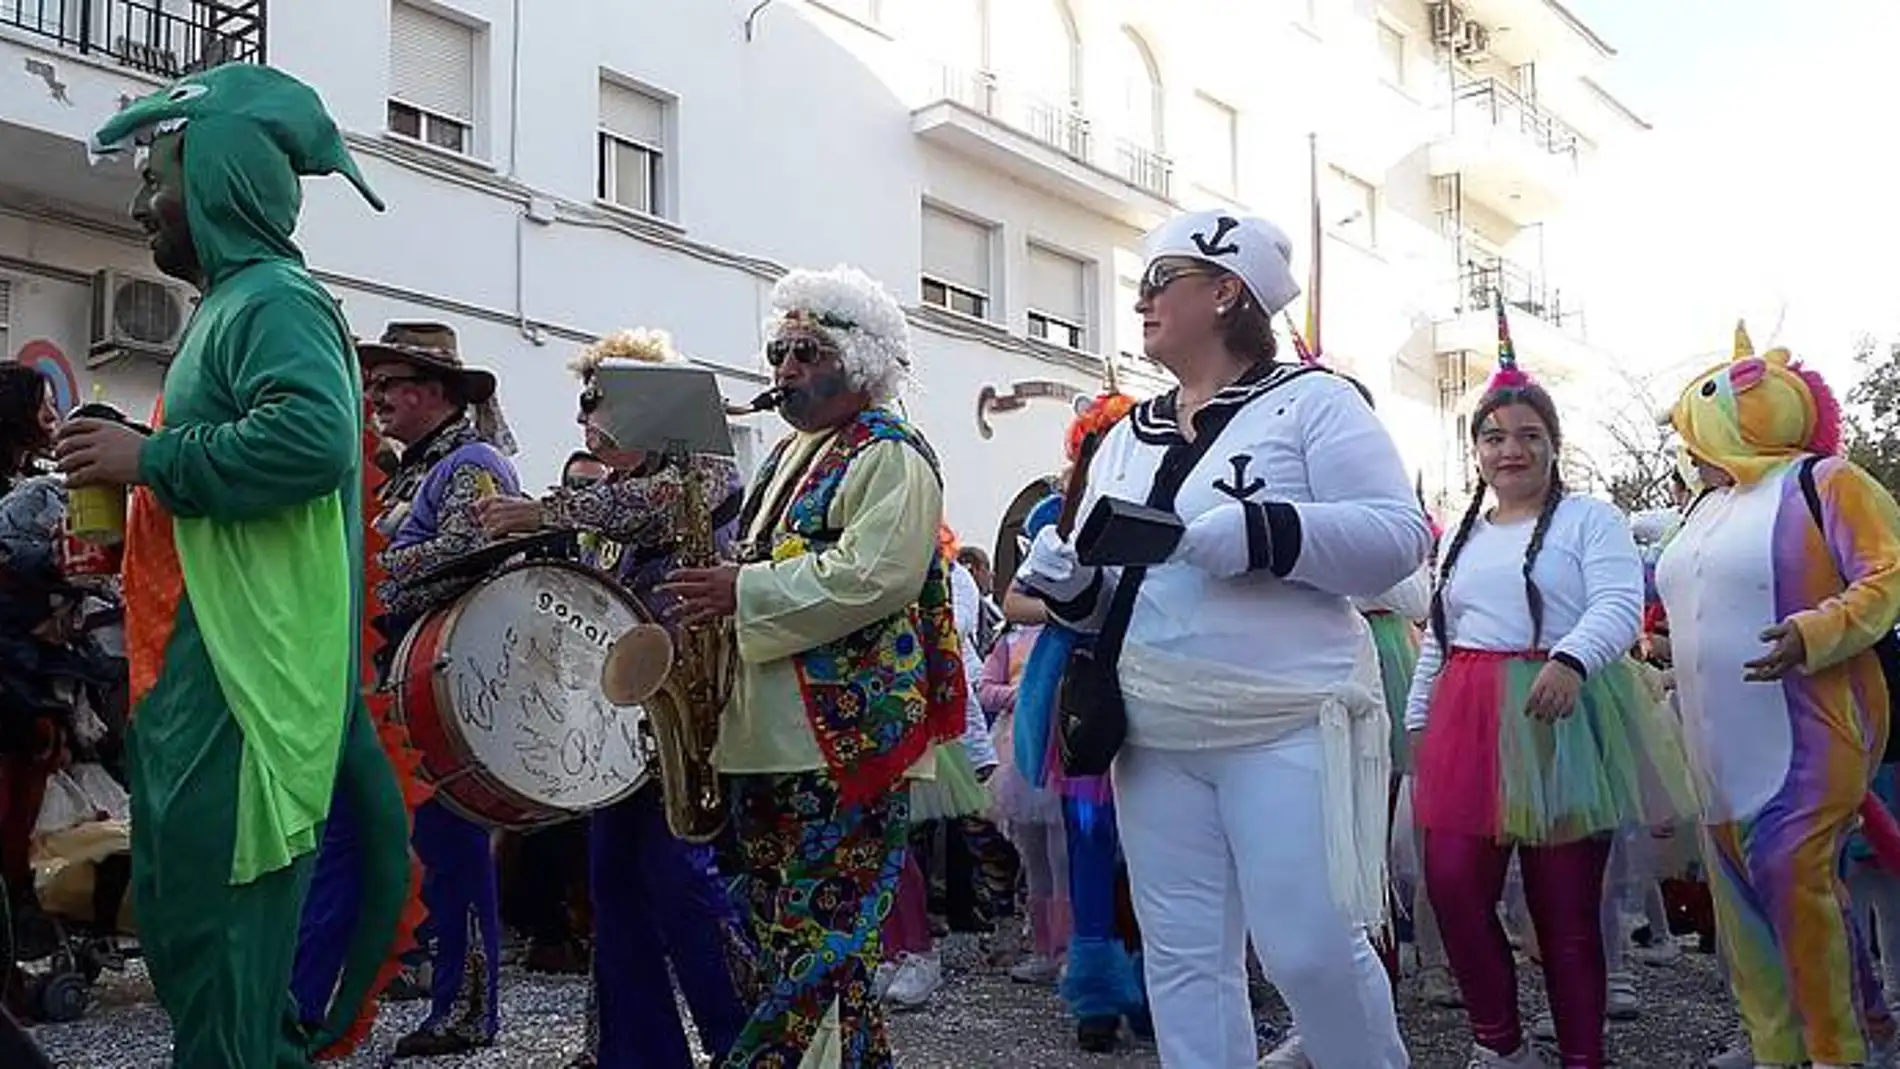 Una imagen de archivo de la Cabalgata del Carnaval de Chiclana